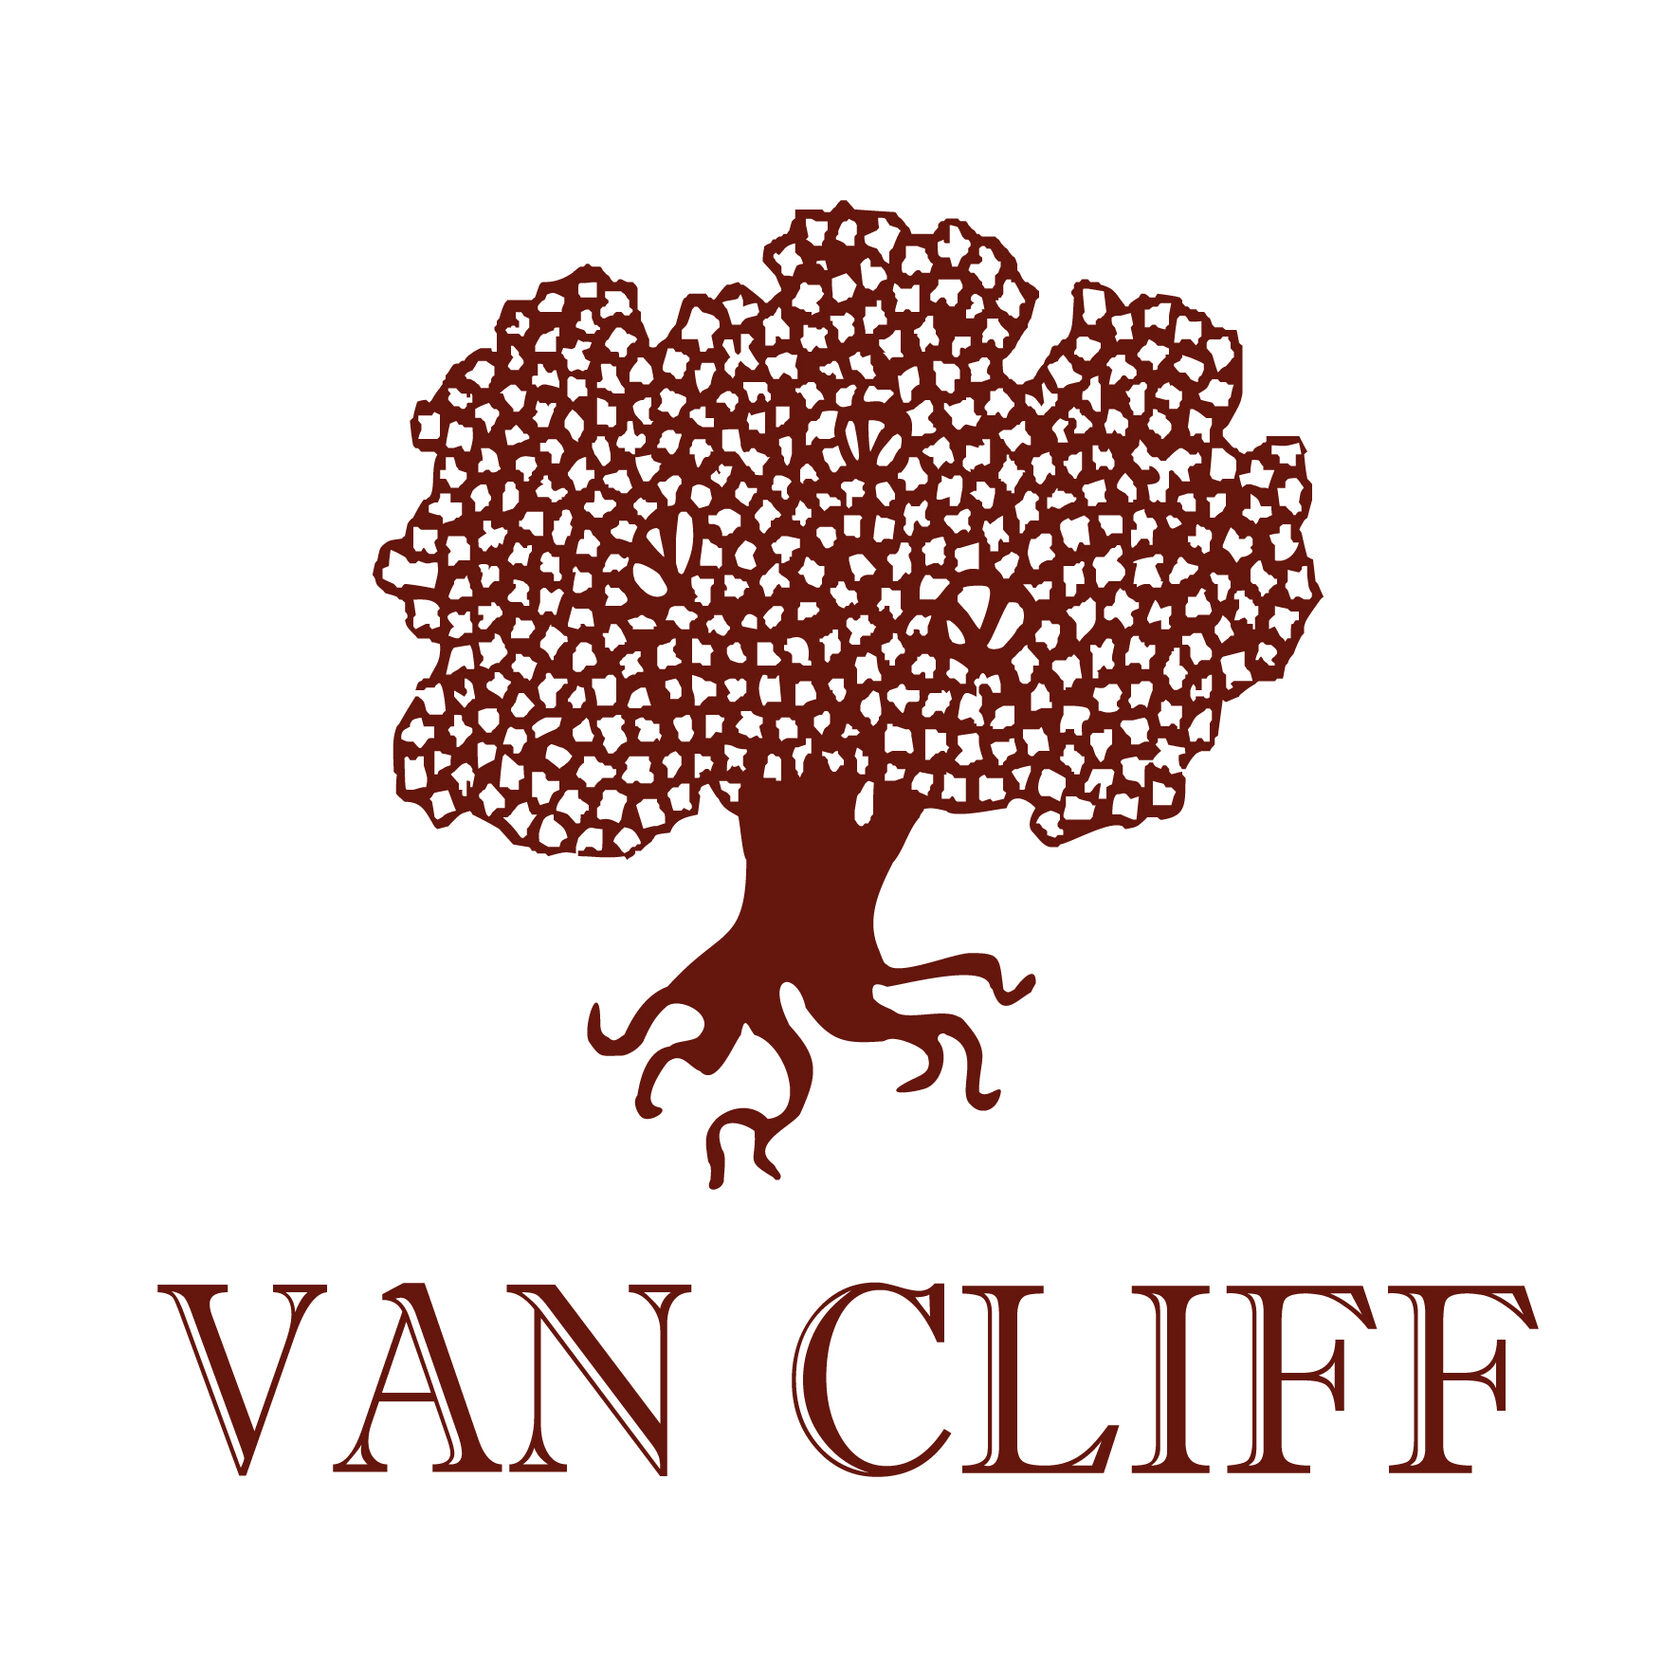 Клиф бренд. Ван Клиф эмблема. Van Cliff логотип. Van Cliff логотип вектор. Эмблема дерева на одежде.